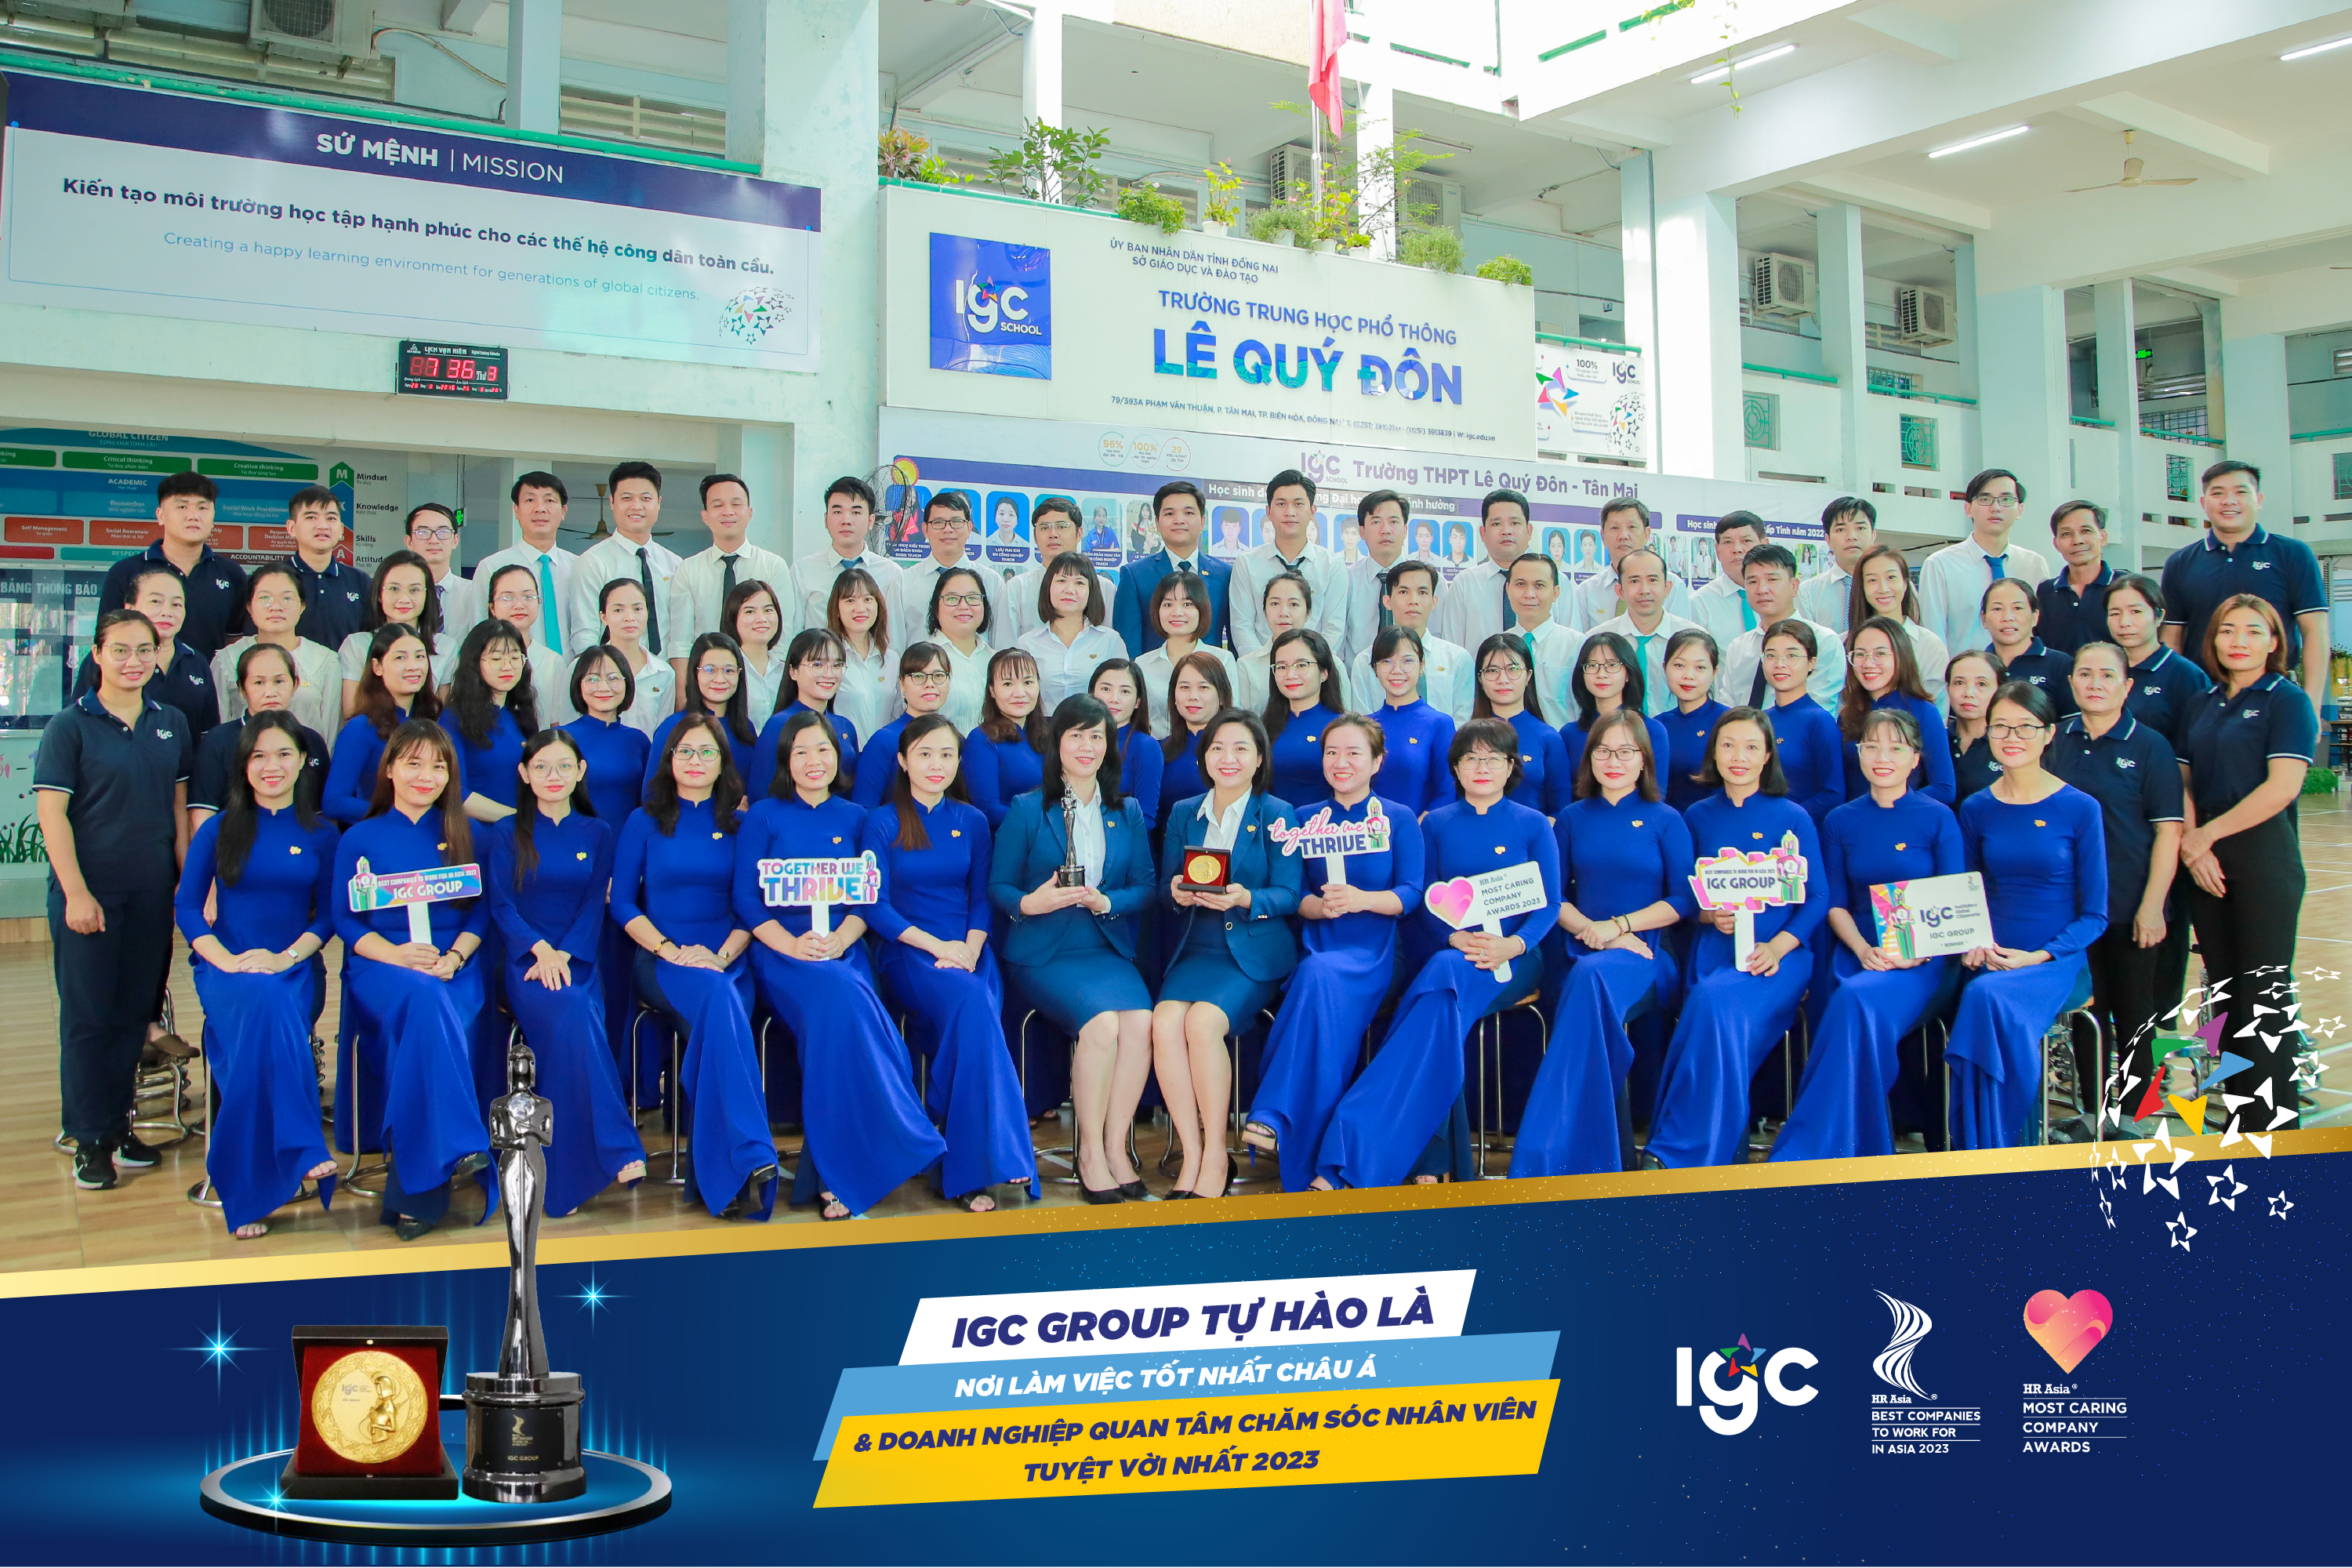 Tập thể Hội đồng Sư phạm trường THPT Lê Quý Đôn - Tân Mai tự hào được làm việc tại Tập đoàn Giáo dục IGC.